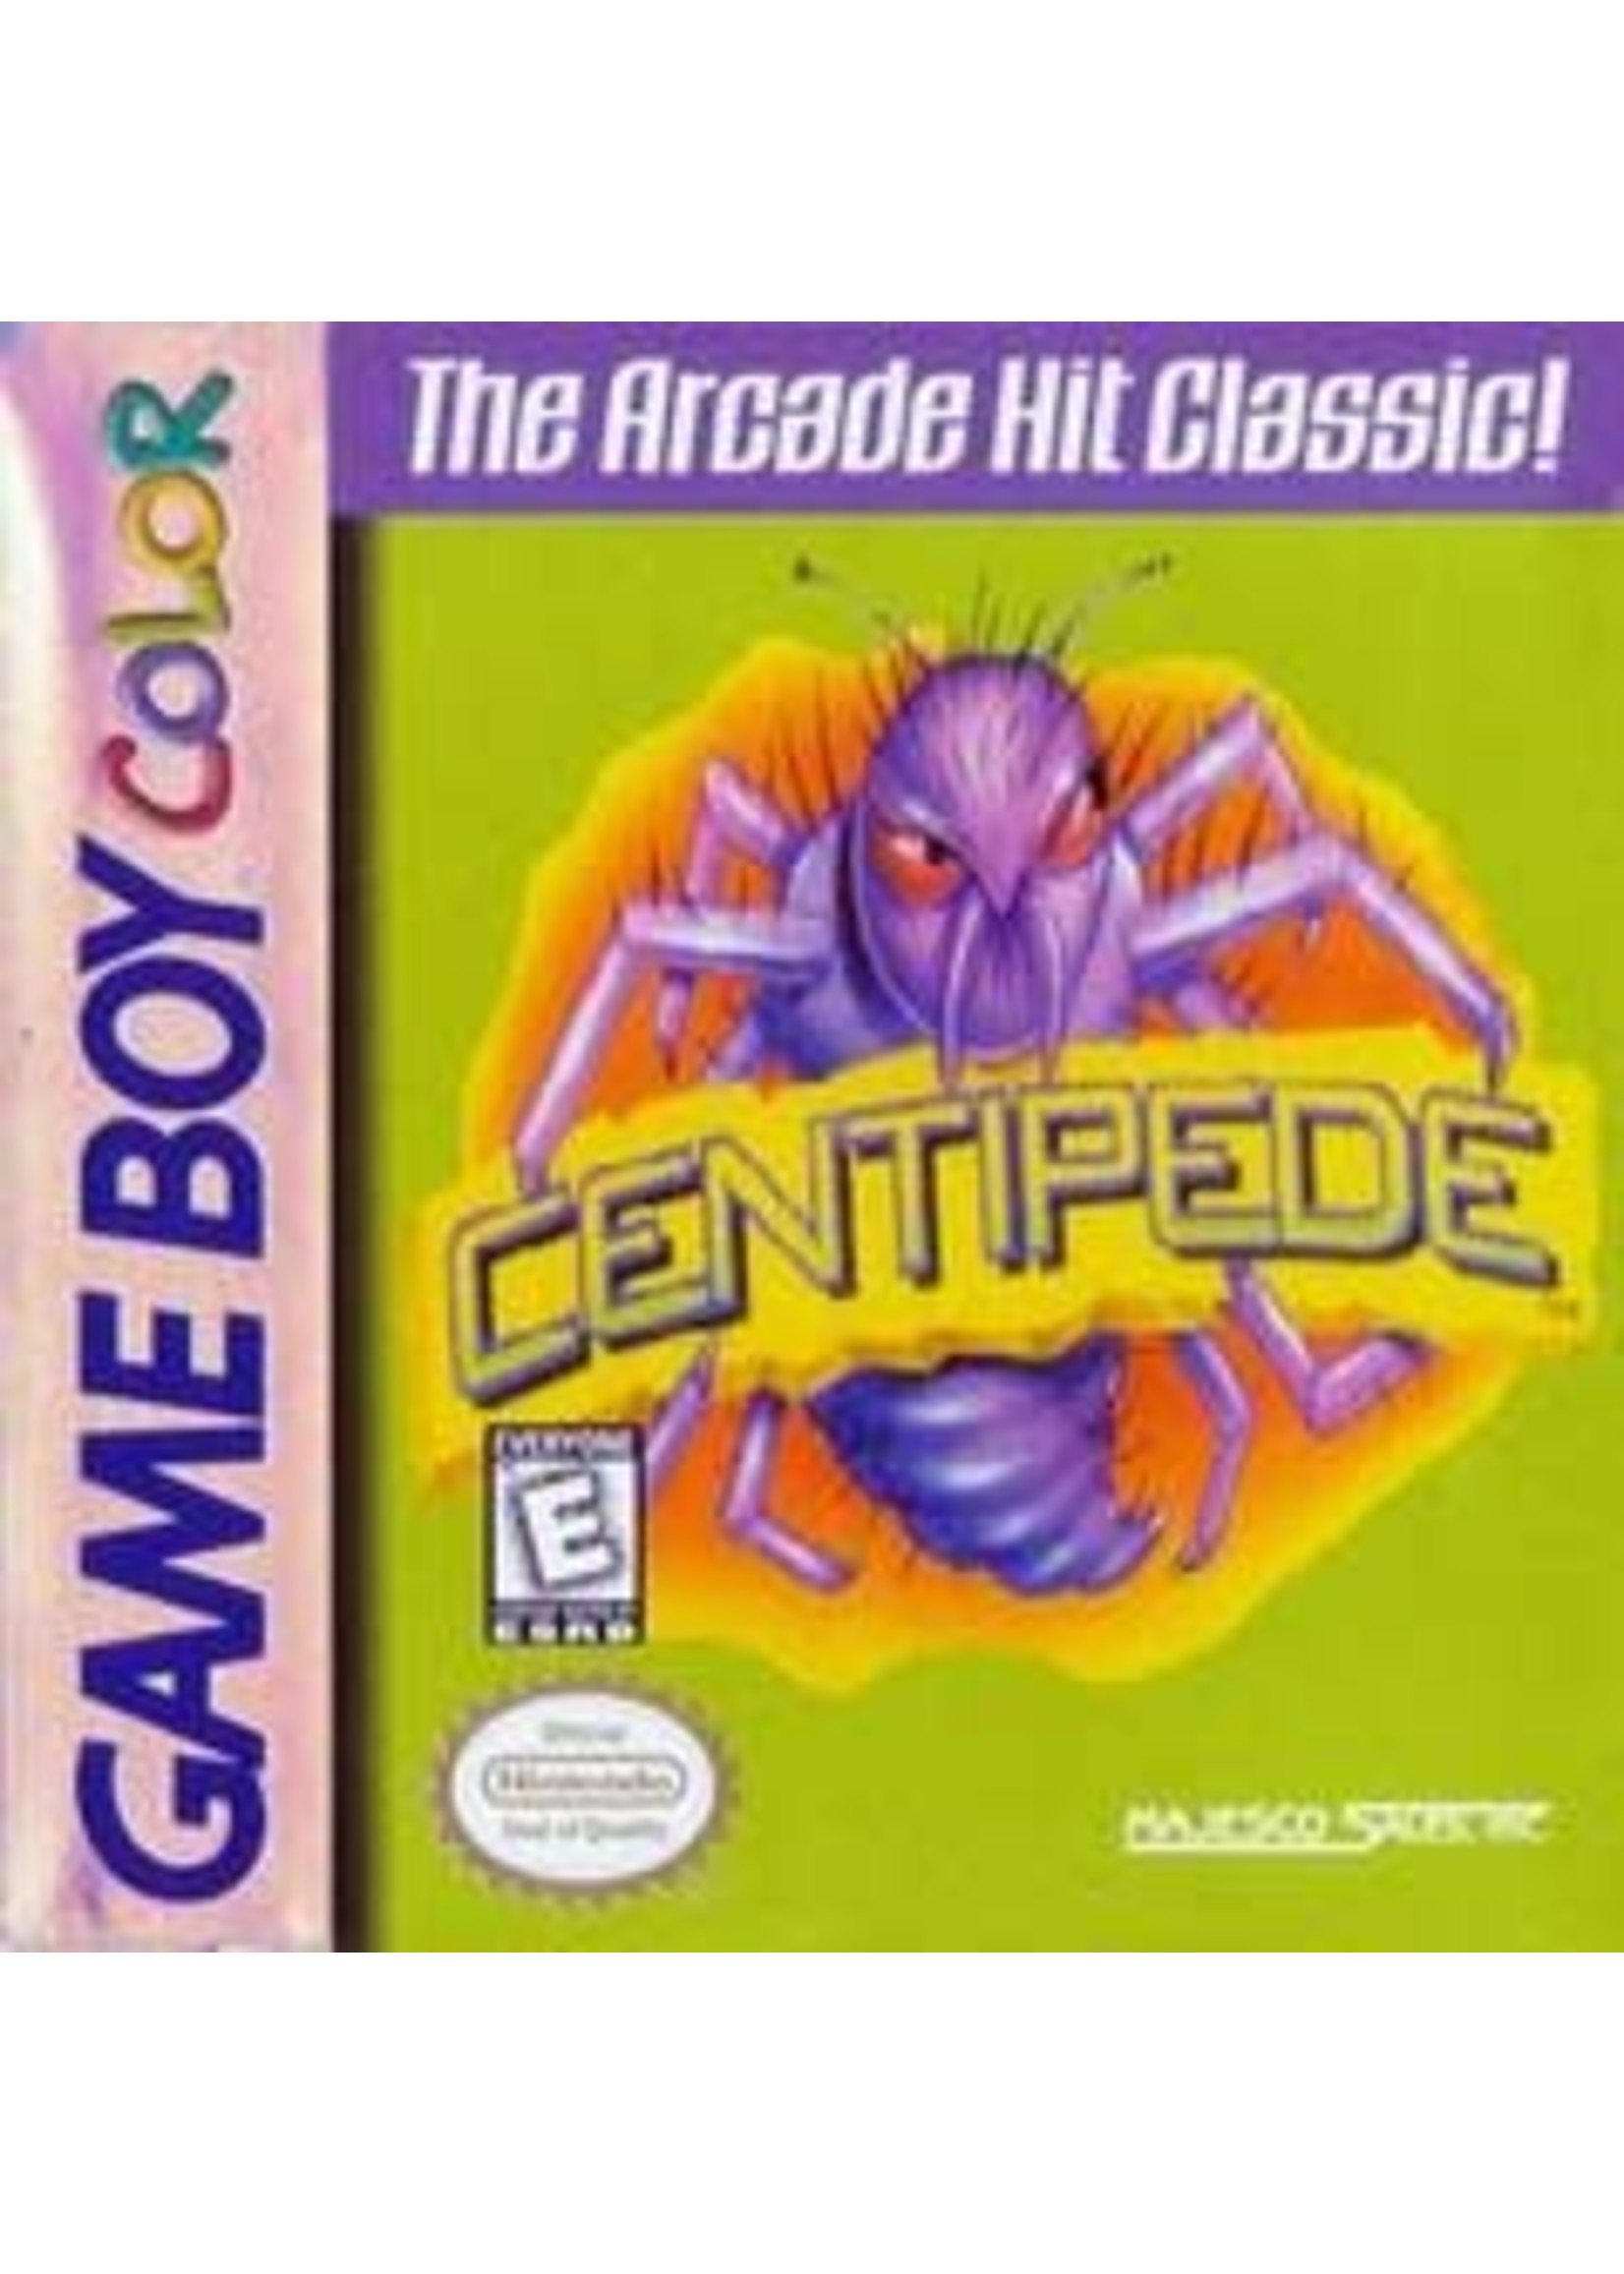 Centipede GameBoy Color